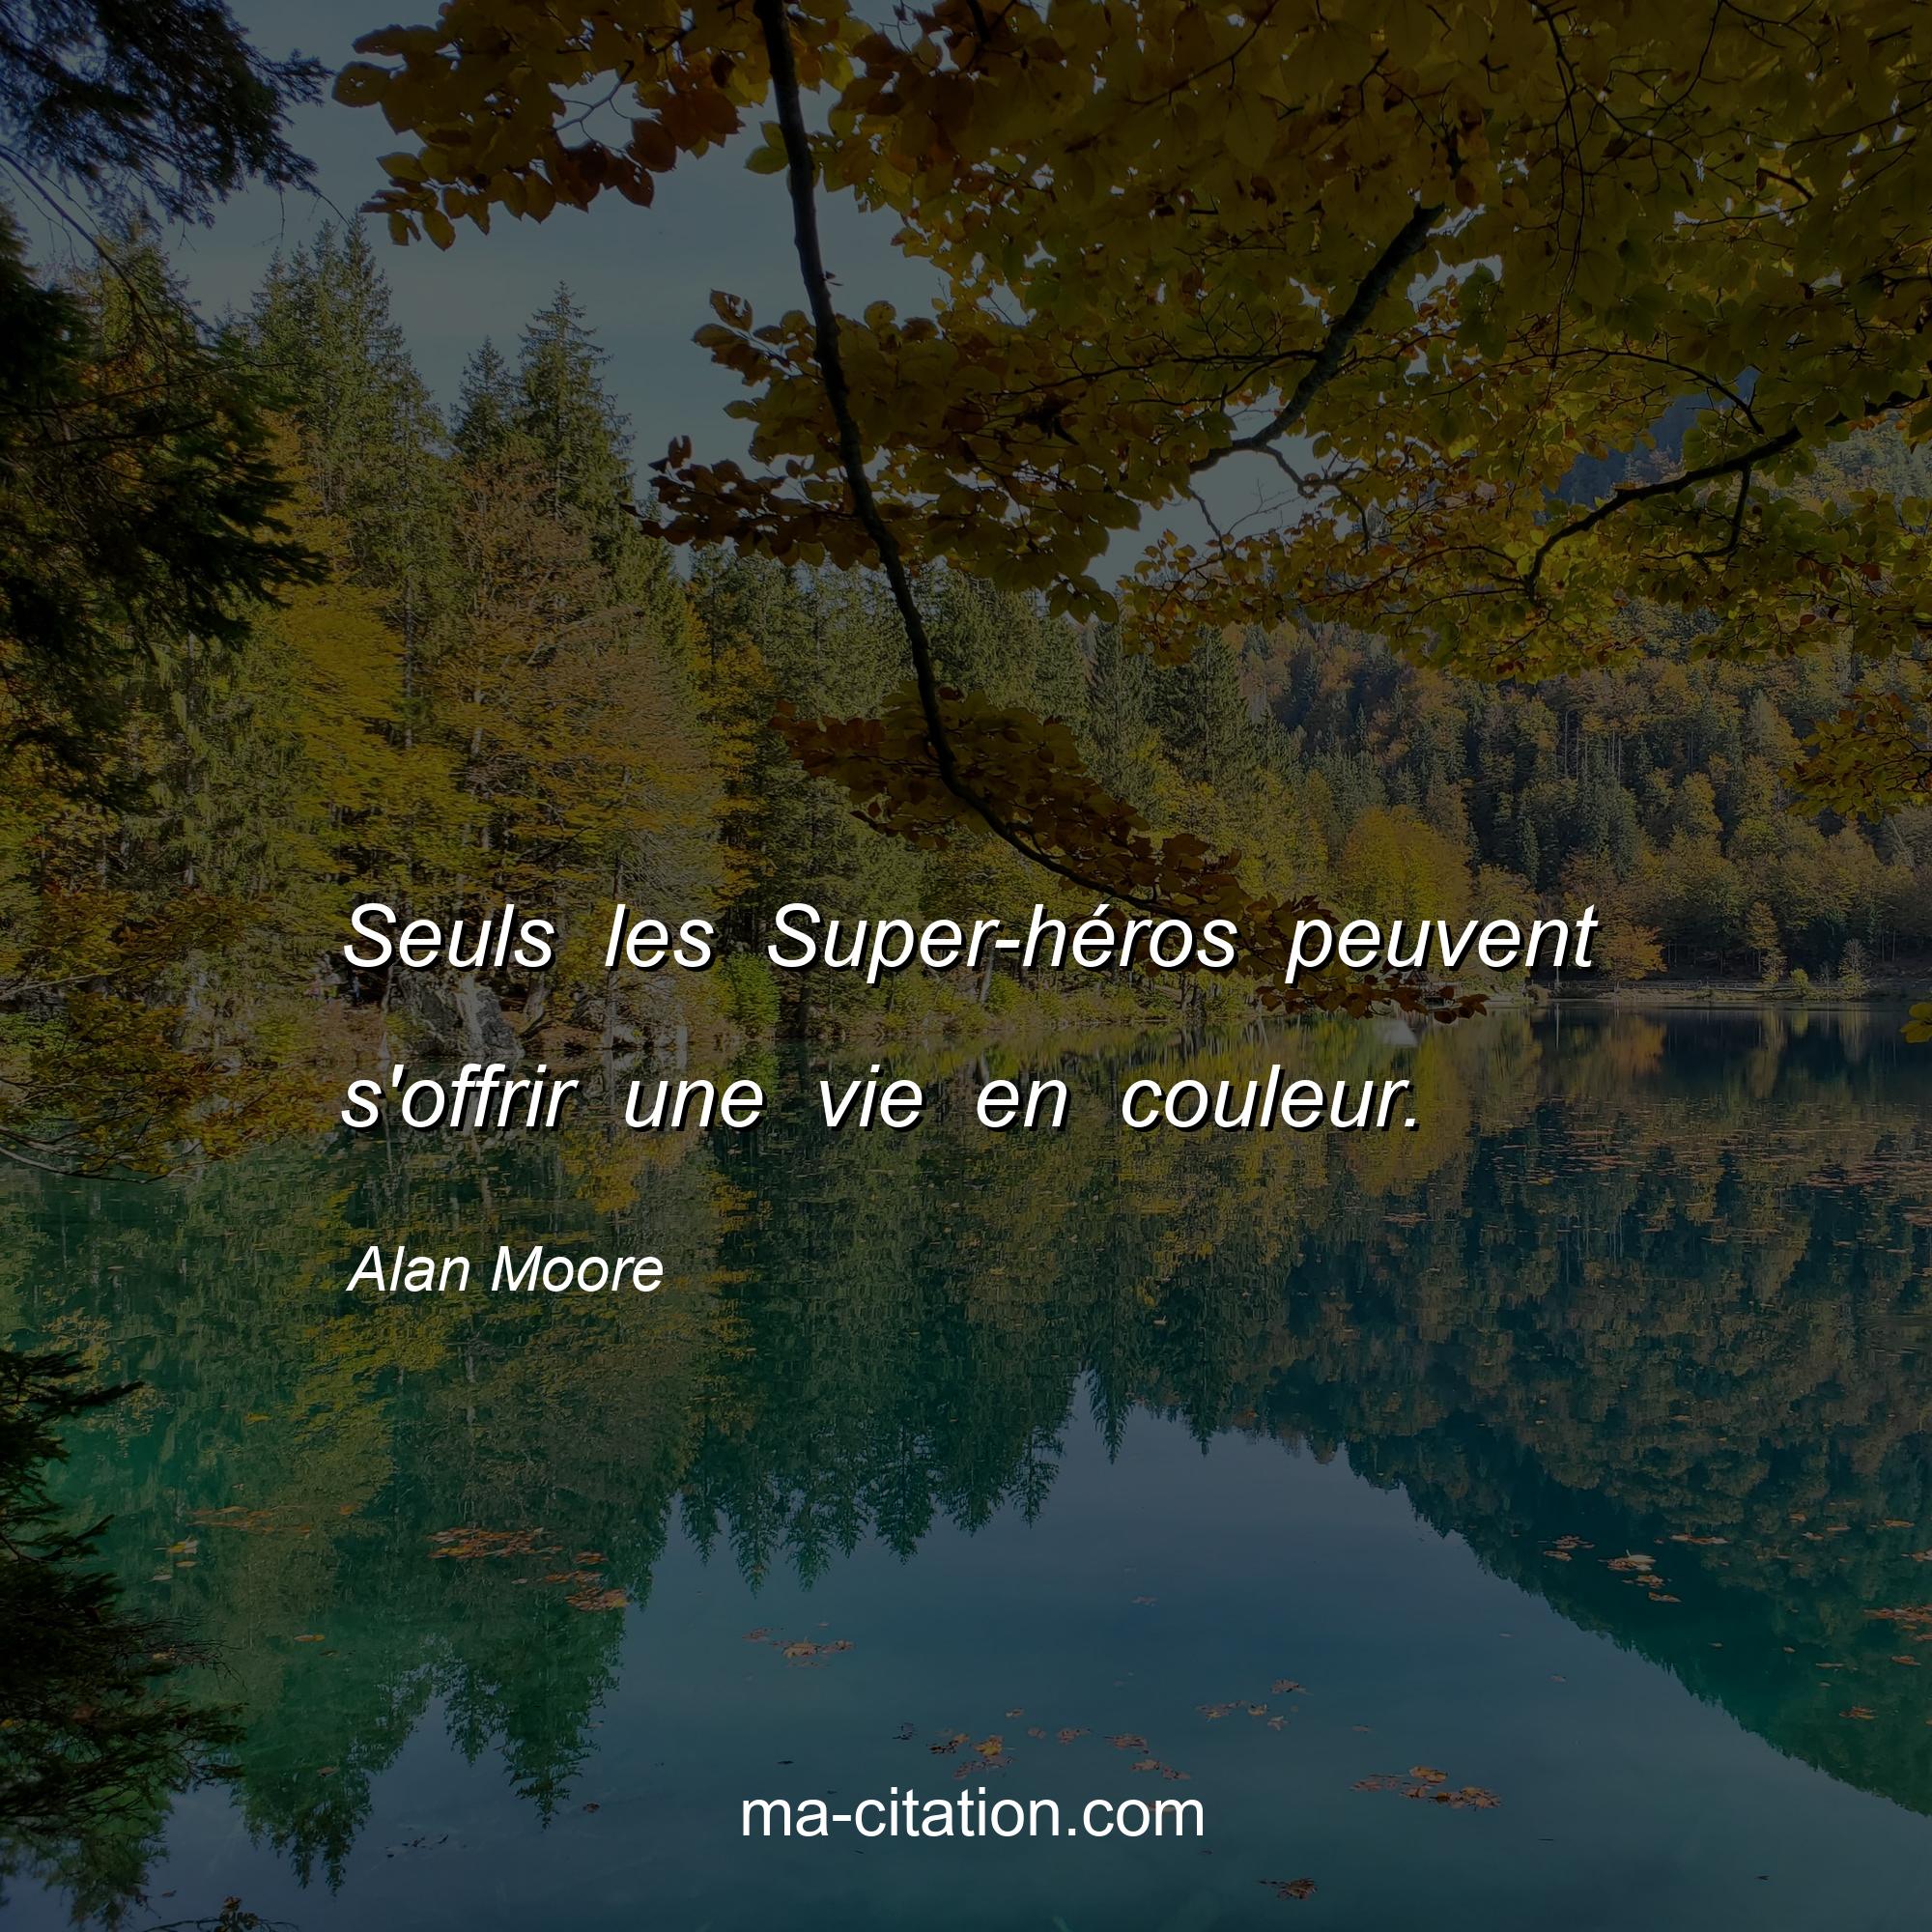 Alan Moore : Seuls les Super-héros peuvent s'offrir une vie en couleur.